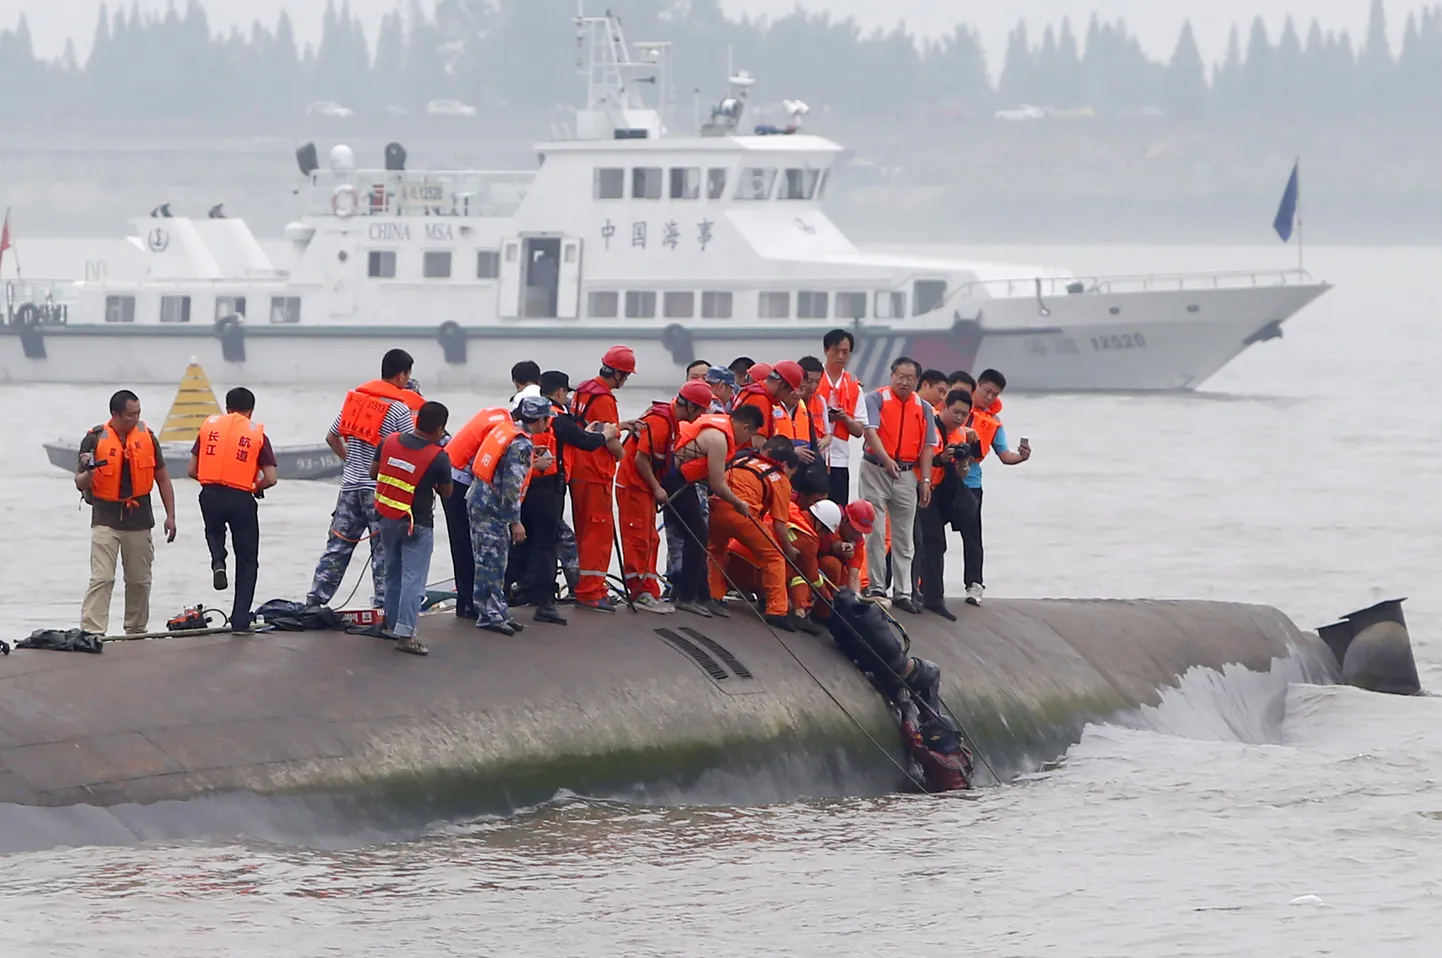 21-aastane meeskonnaliige Chen Shuhan pääses laevaõnnetusest eluga. Pildil tõmmatakse teda veest välja.